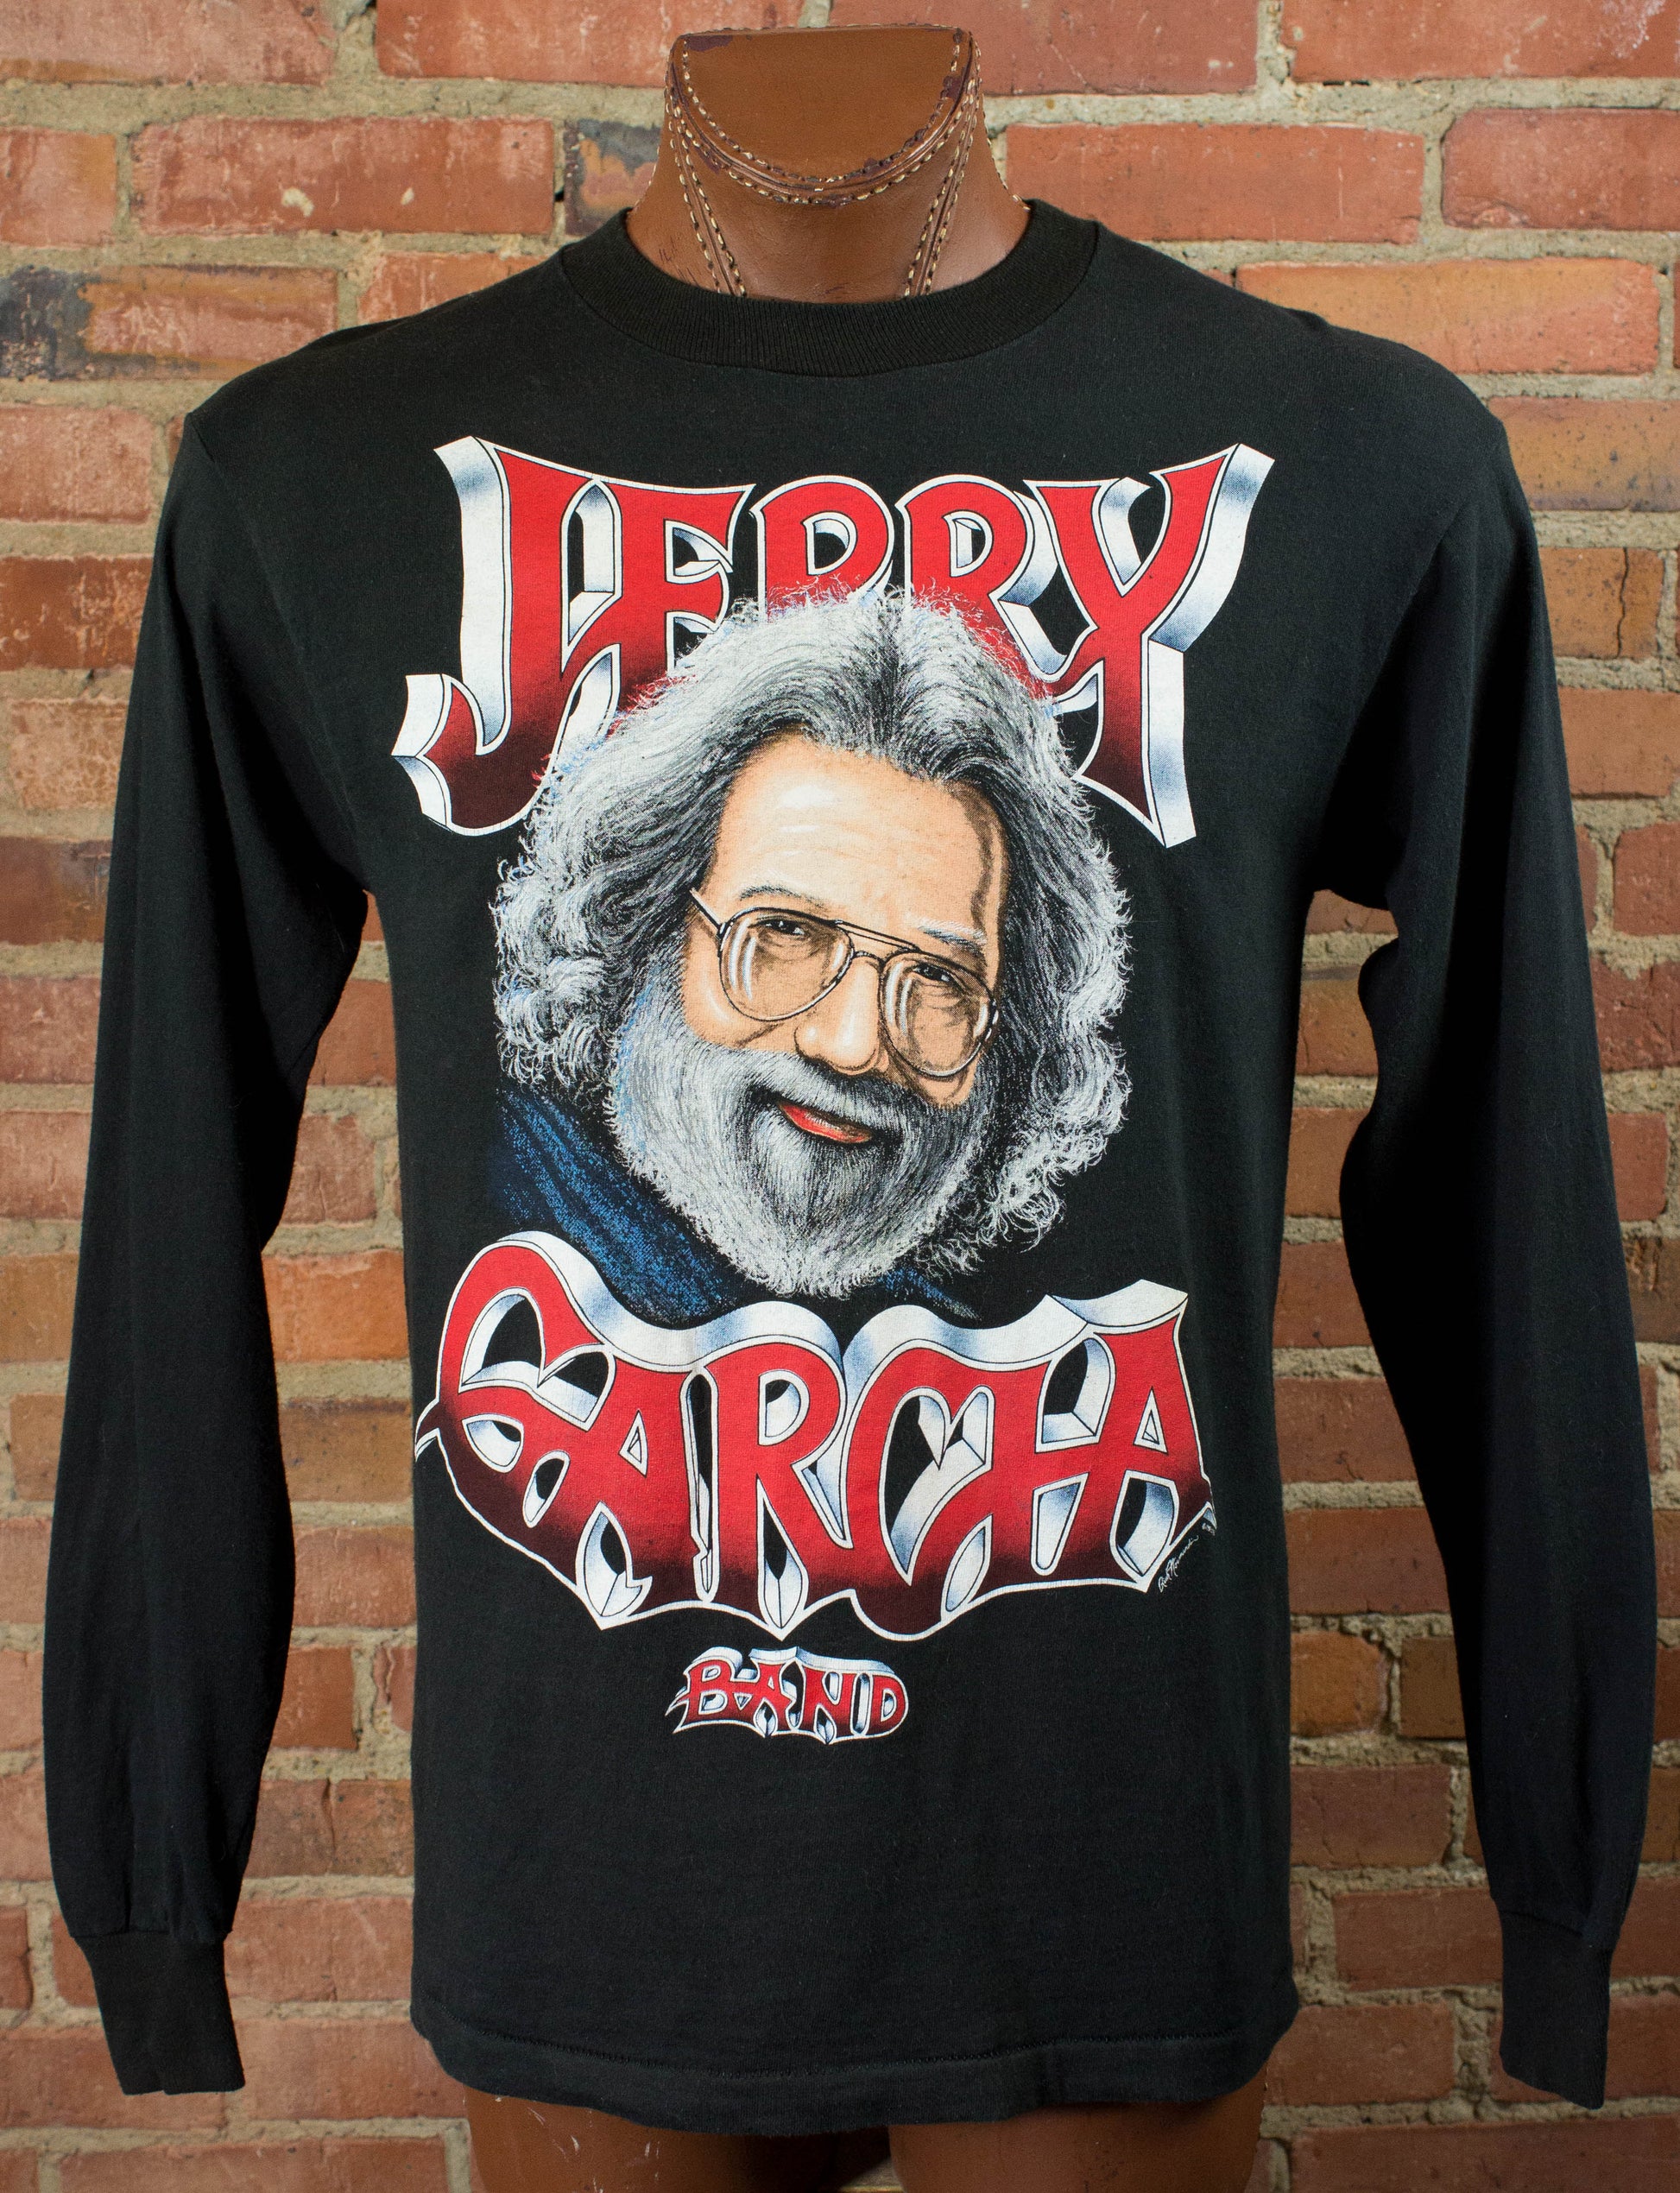 Vintage Jerry Garcia Band 1991 Black Long Sleeve Concert T Shirt Unise –  Black Shag Vintage